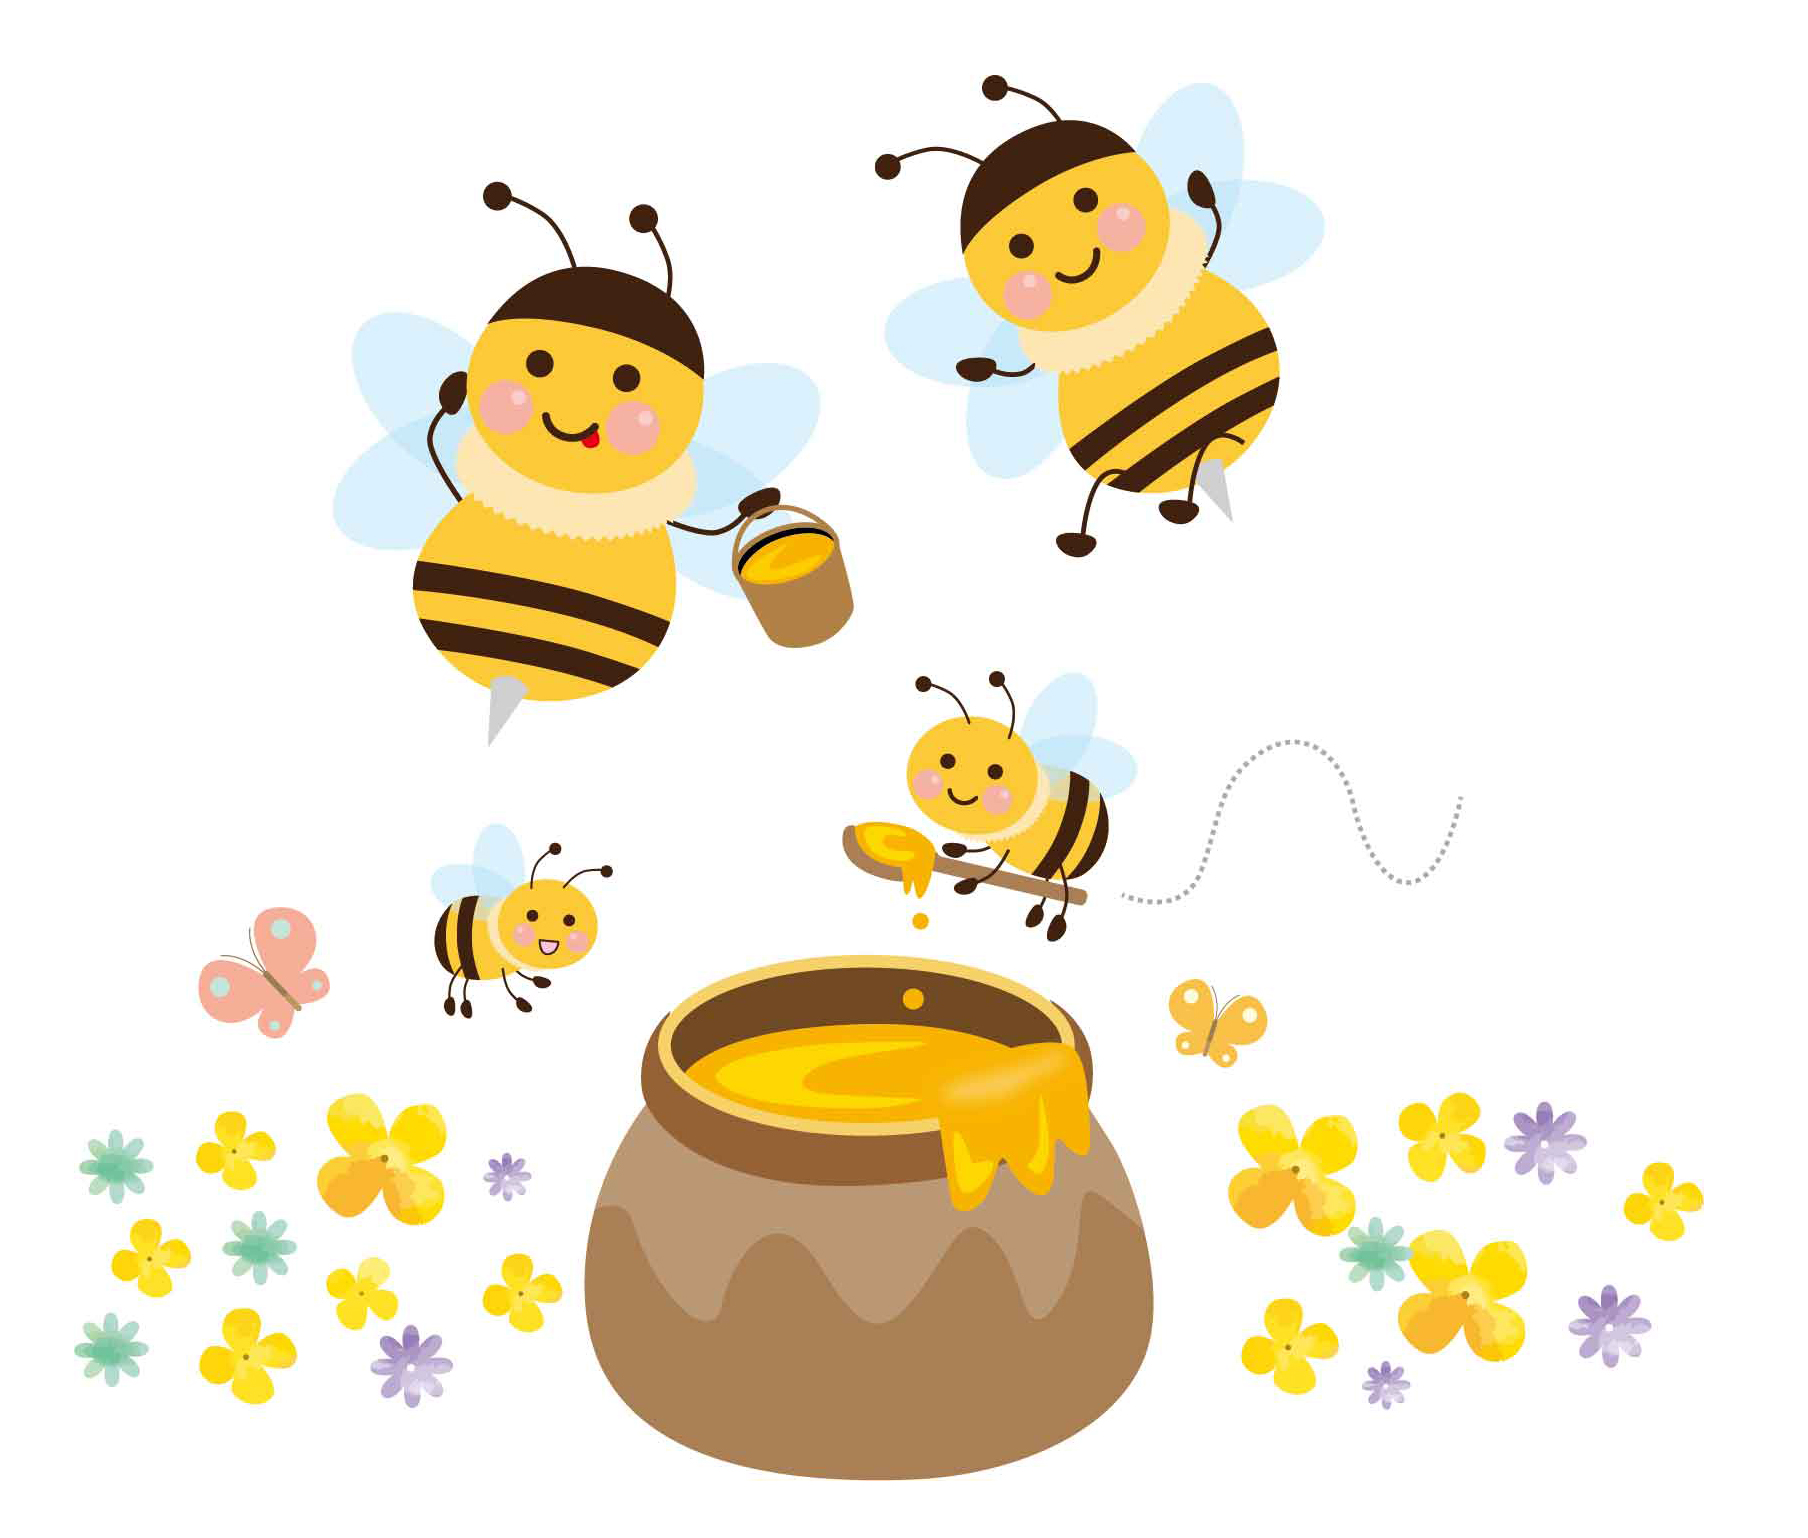 ソレダメ ハチミツレシピ 日本ミツバチの蜂蜜は栄養満点 ふうのお楽しみ日記